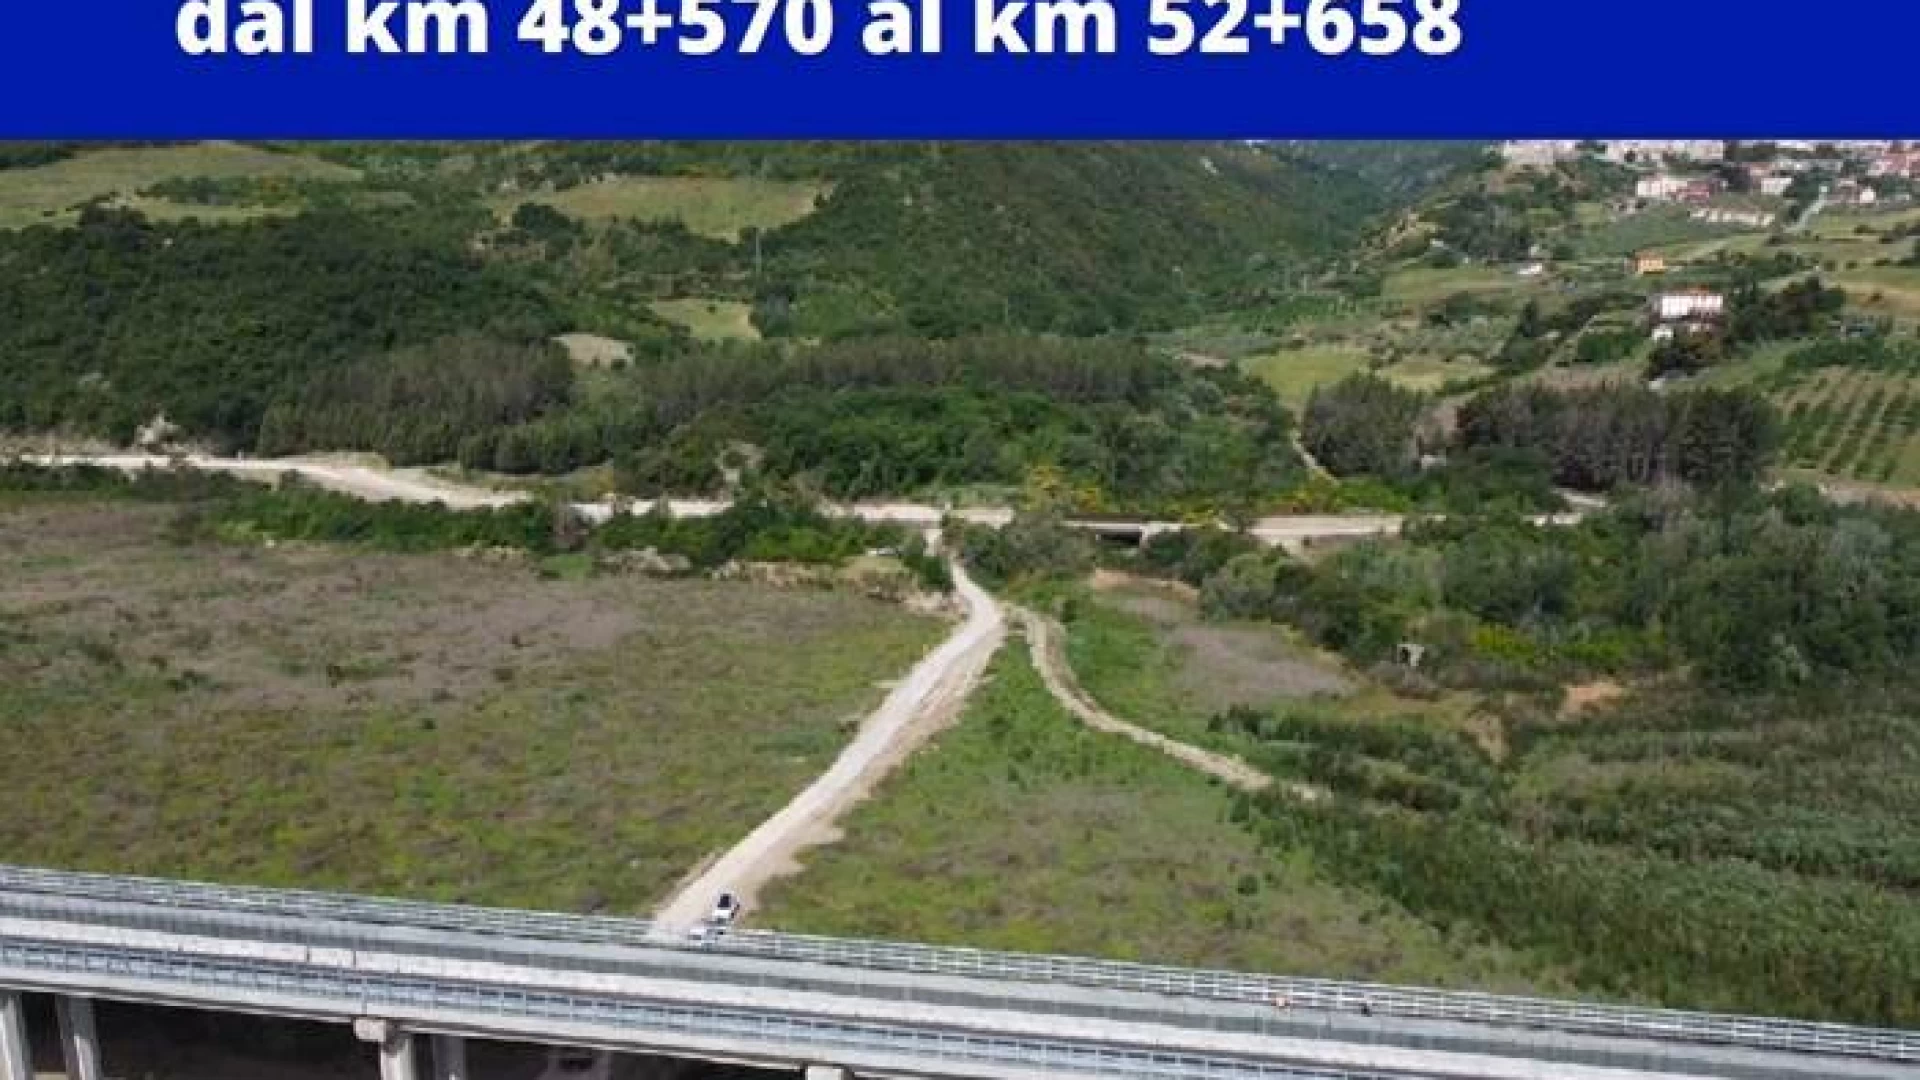 Viabilità alternativa SS 647 “Fondo Valle del Biferno”, venerdì 9 luglio l’apertura al traffico.